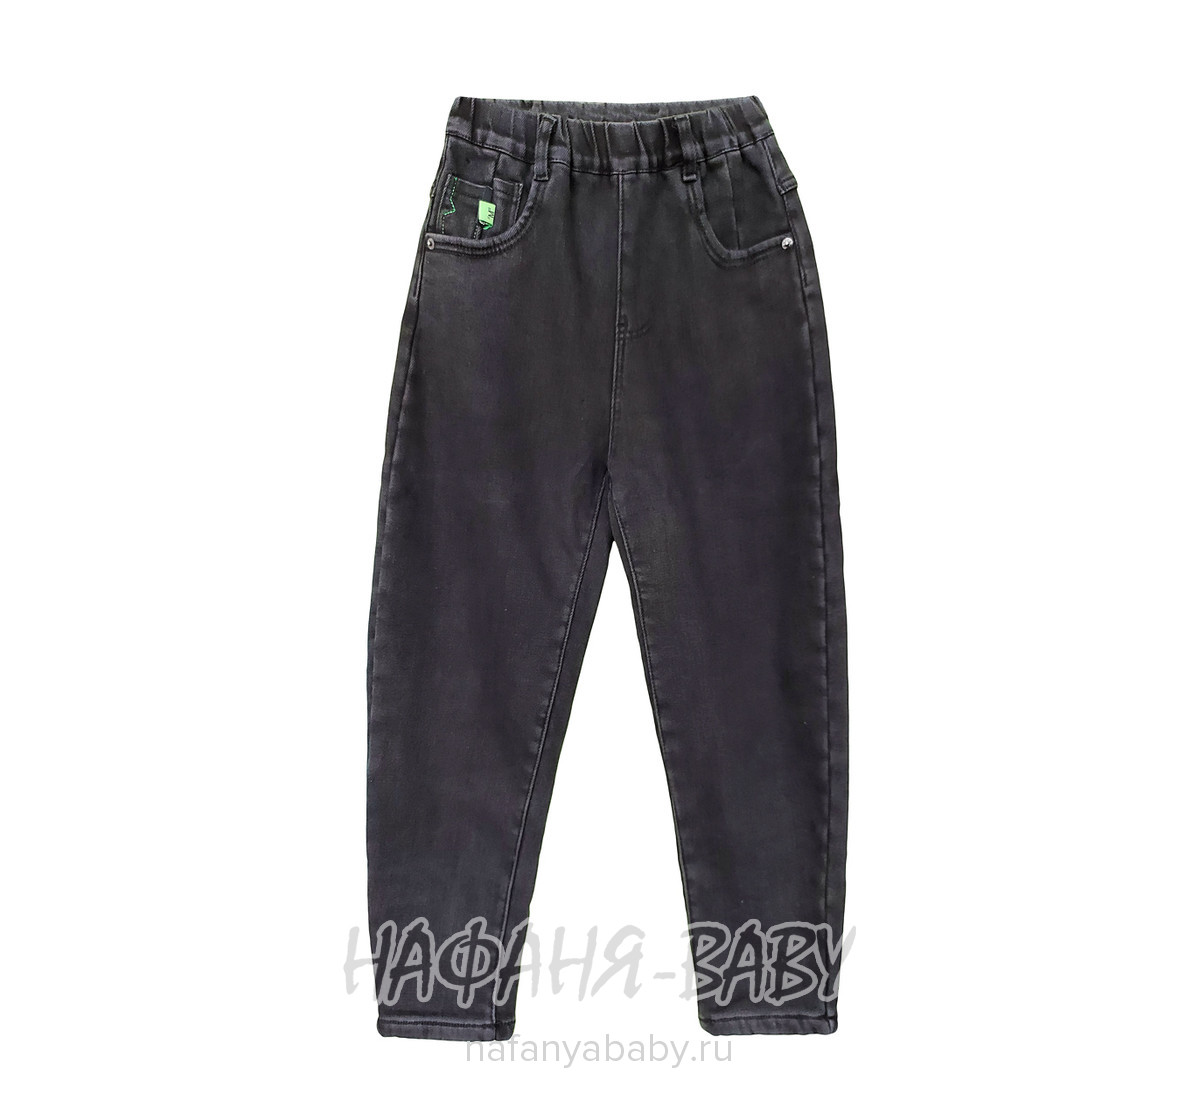 Подростковые теплые джинсы LNYB, купить в интернет магазине Нафаня. арт: 85001.